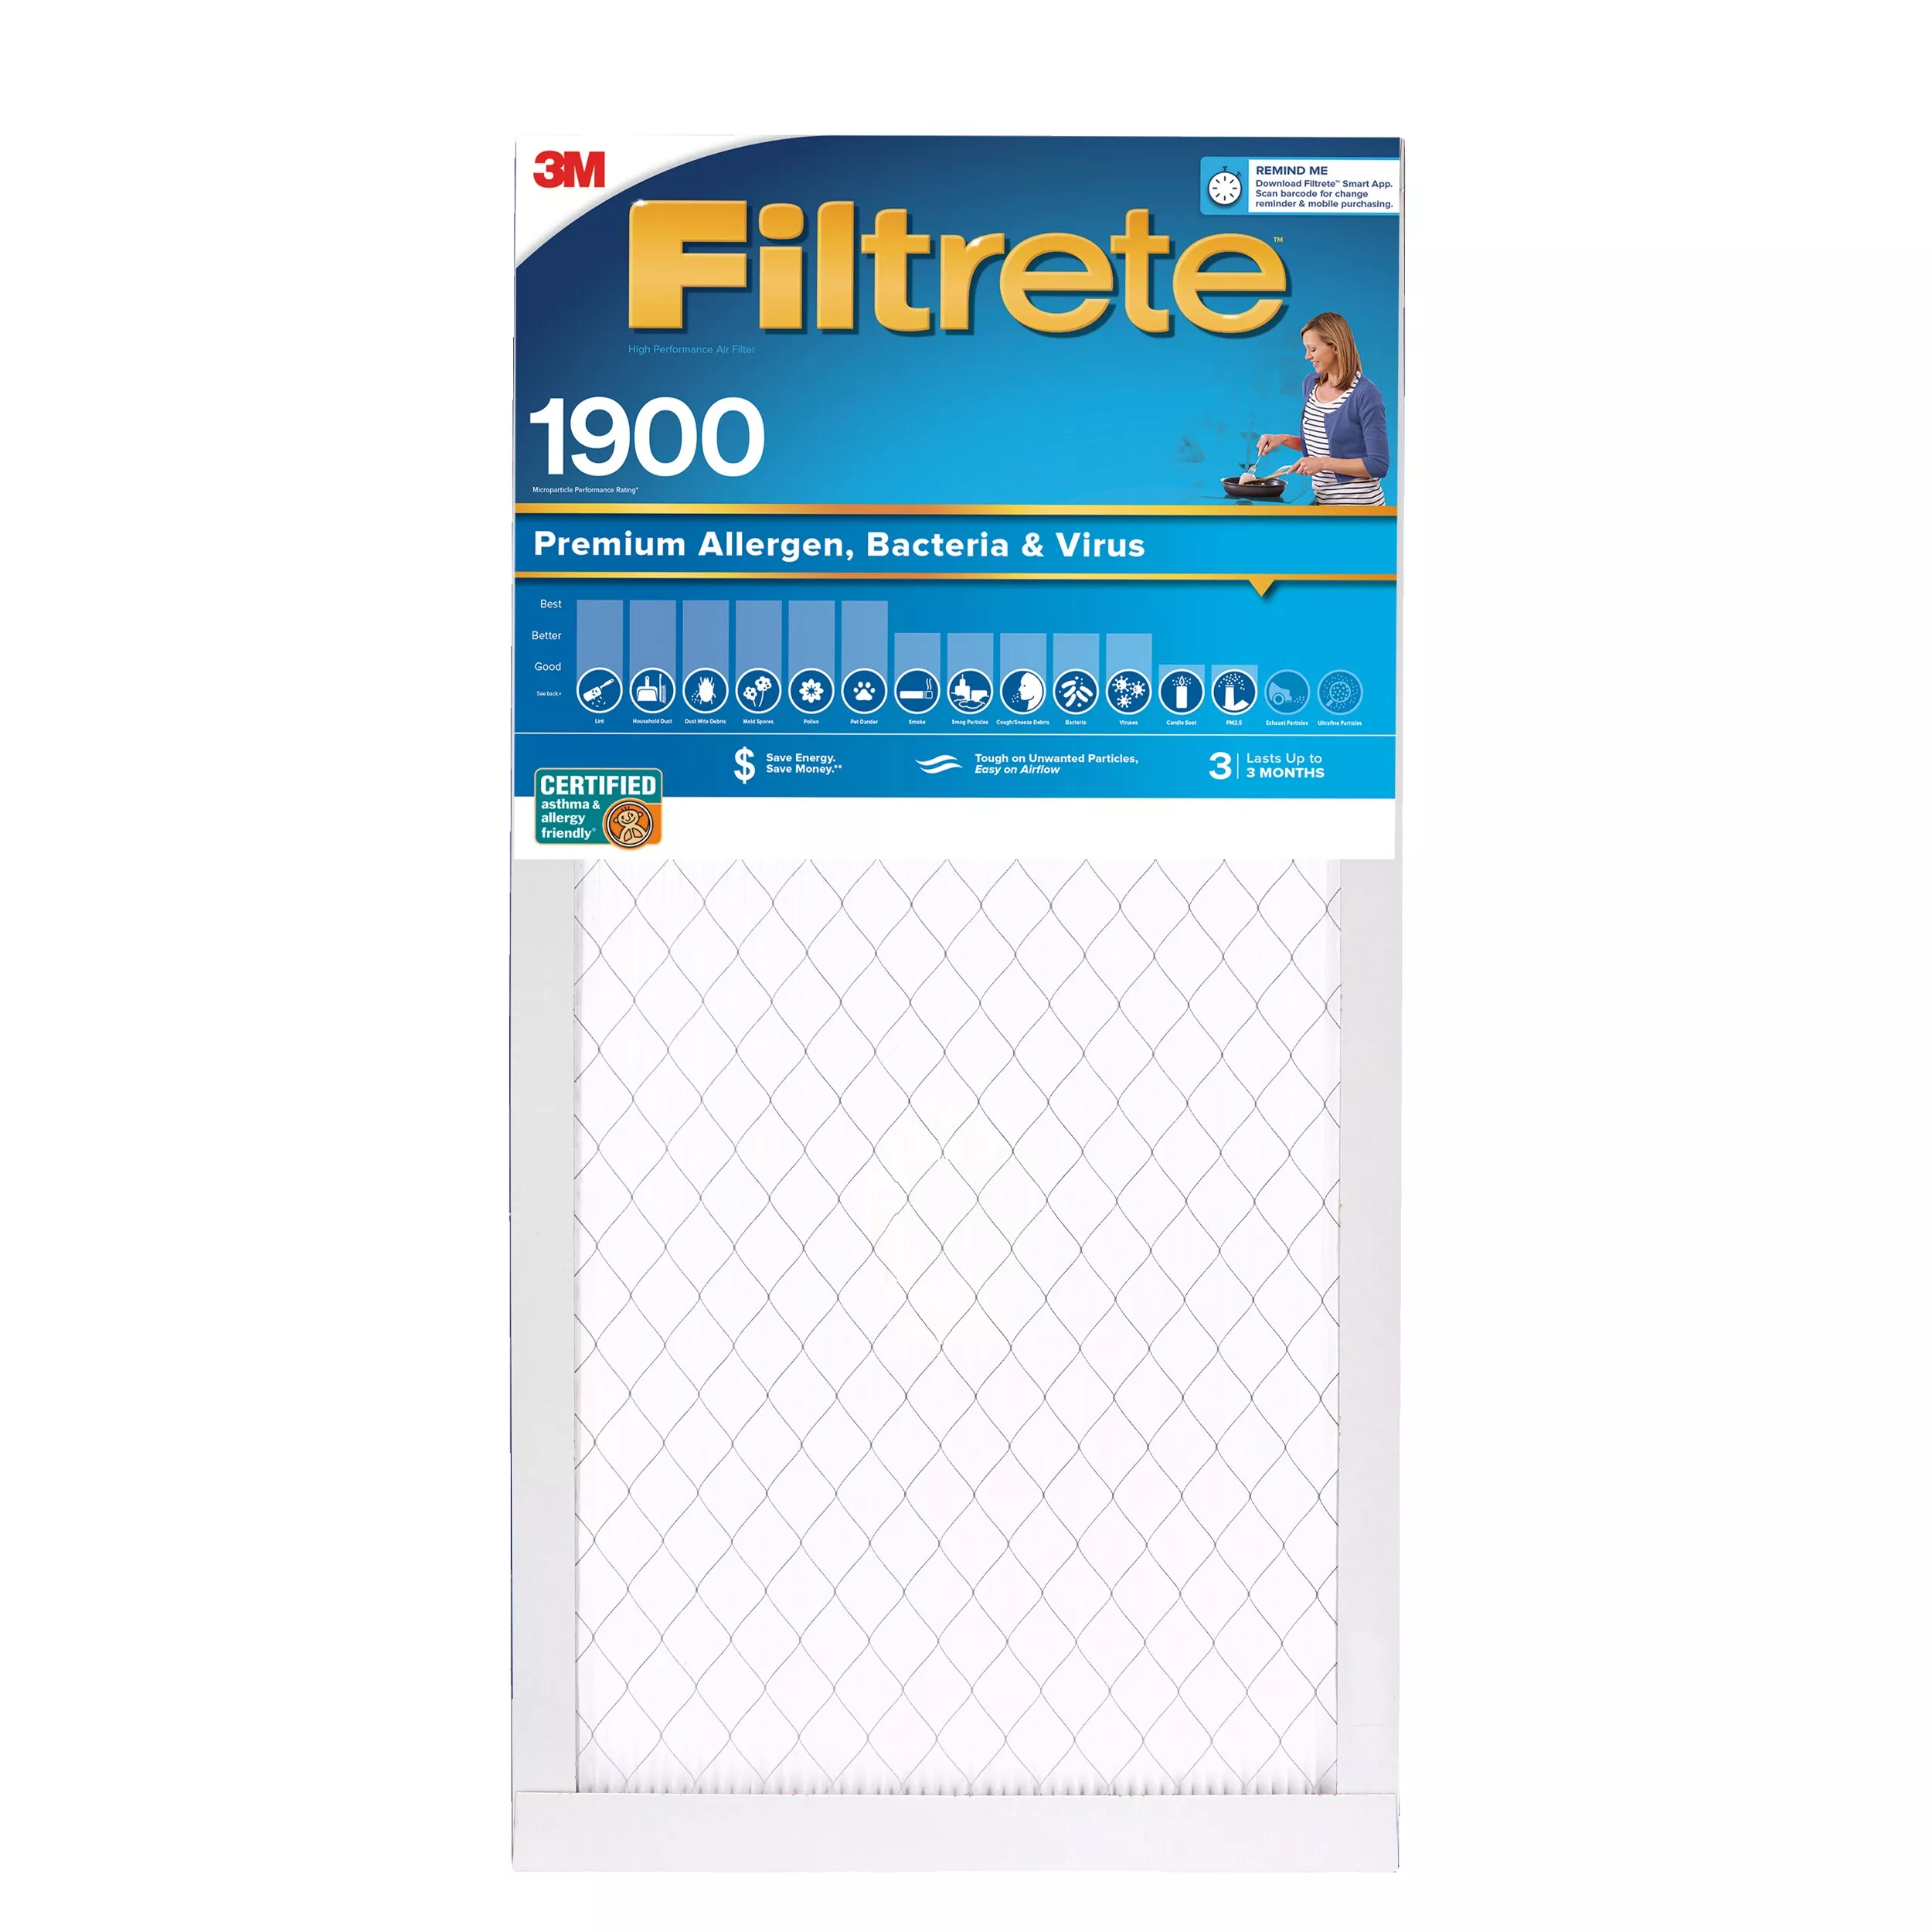 Filtrete™ High Performance Air Filter 1900 MPR UA05-4, 14 in x 20 in x 1 in (35.5 cm x 50.8 cm x 2.5 cm)